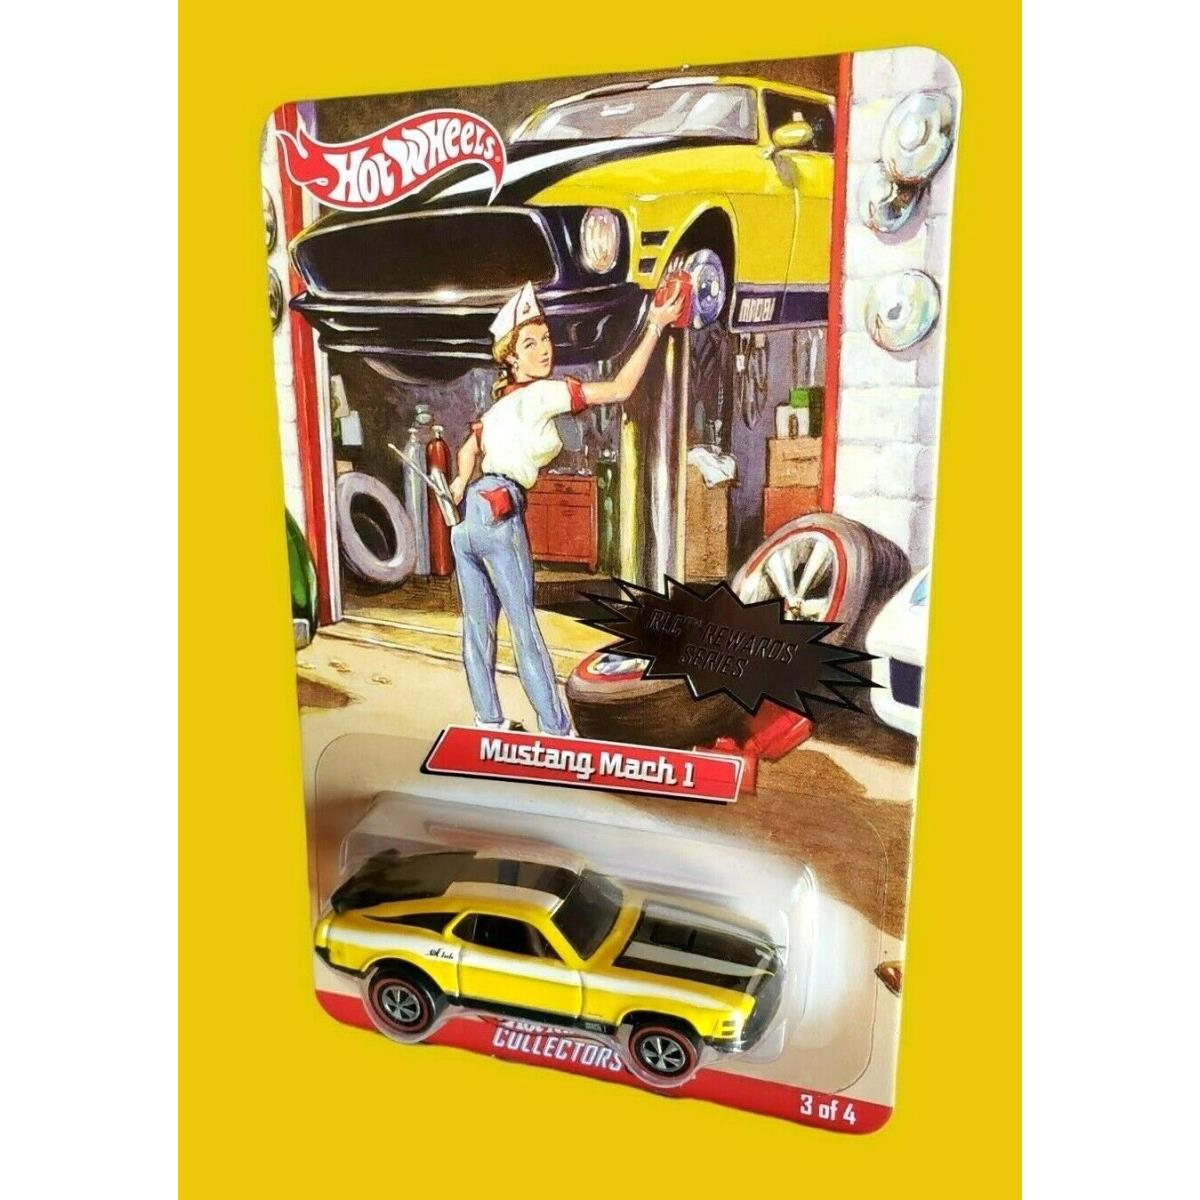 2007 Hot Wheels Rlc Mustang Mach 1 Rlc Rewards Series Yellow 3/4 4090/6962 Moc